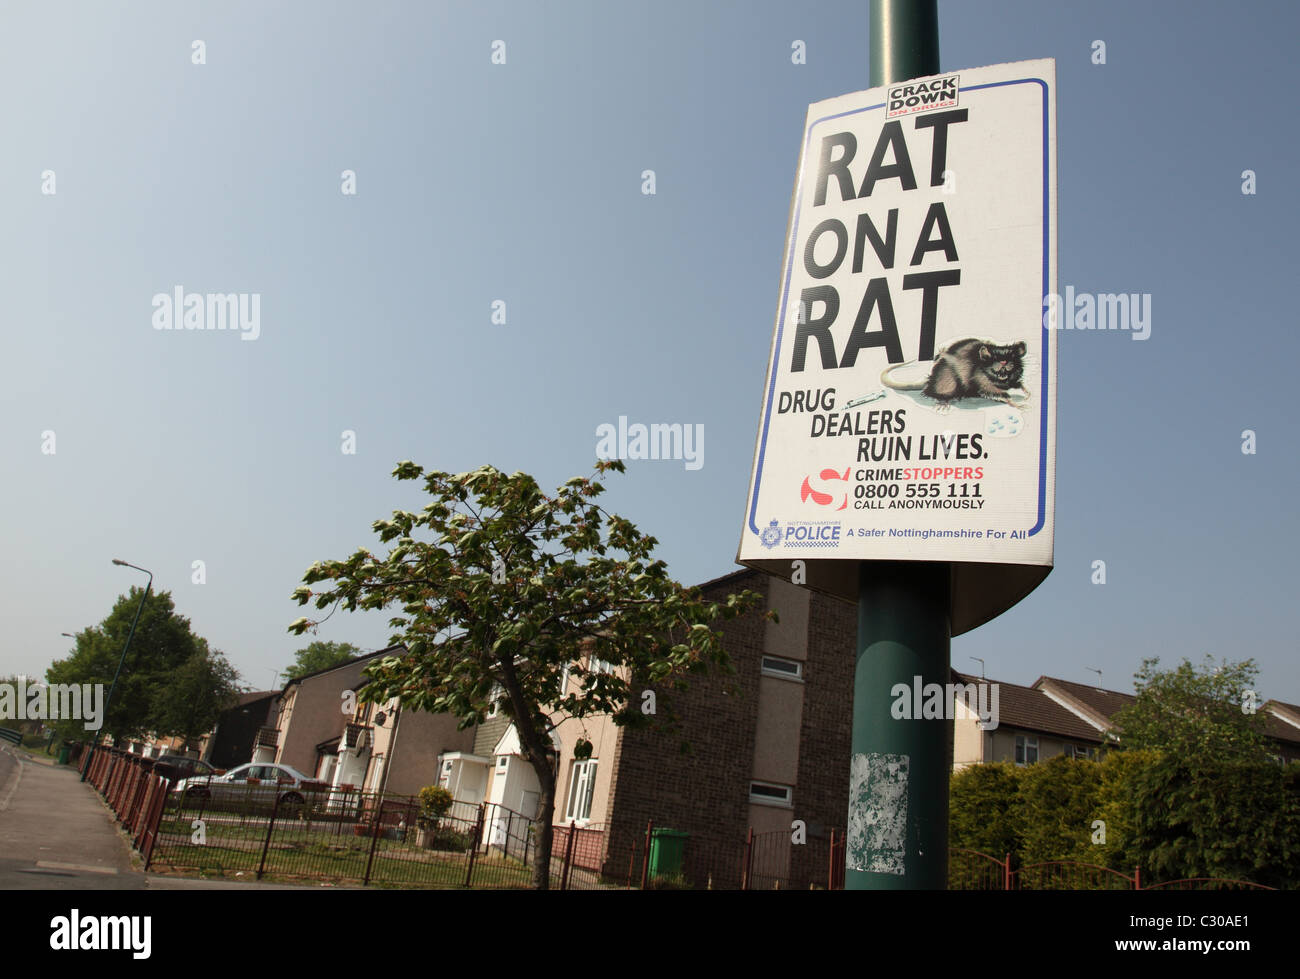 Ein Medikament Nottinghamshire Polizei im Zusammenhang mit Warnschild auf einer Wohnsiedlung in Großbritannien. Stockfoto